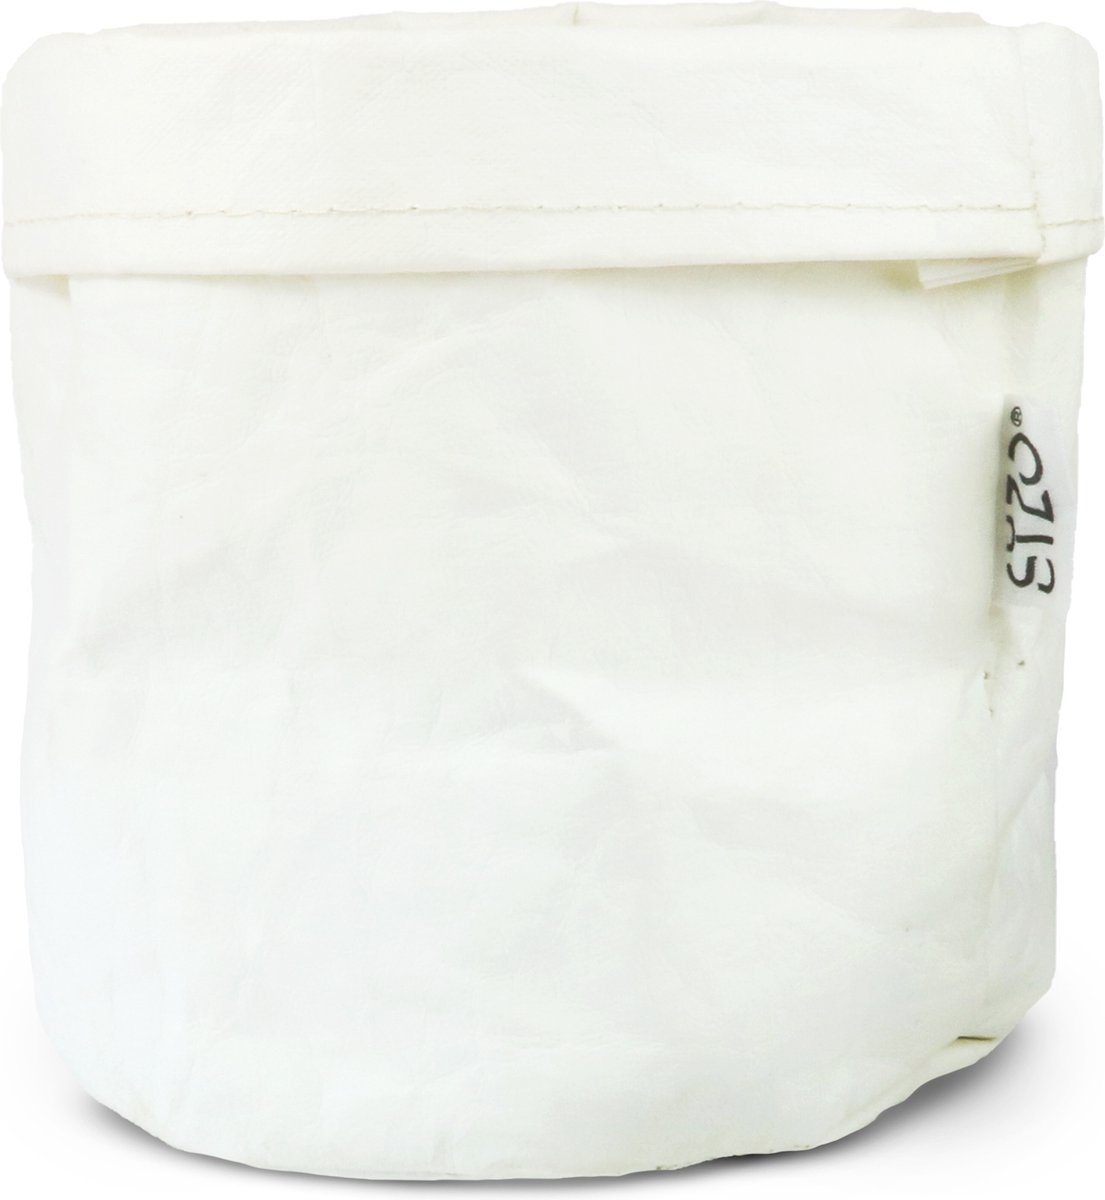 SIZO wasbare papieren zak wit met biologisch afbreekbare waterdichte voering | opberger | plantenzak